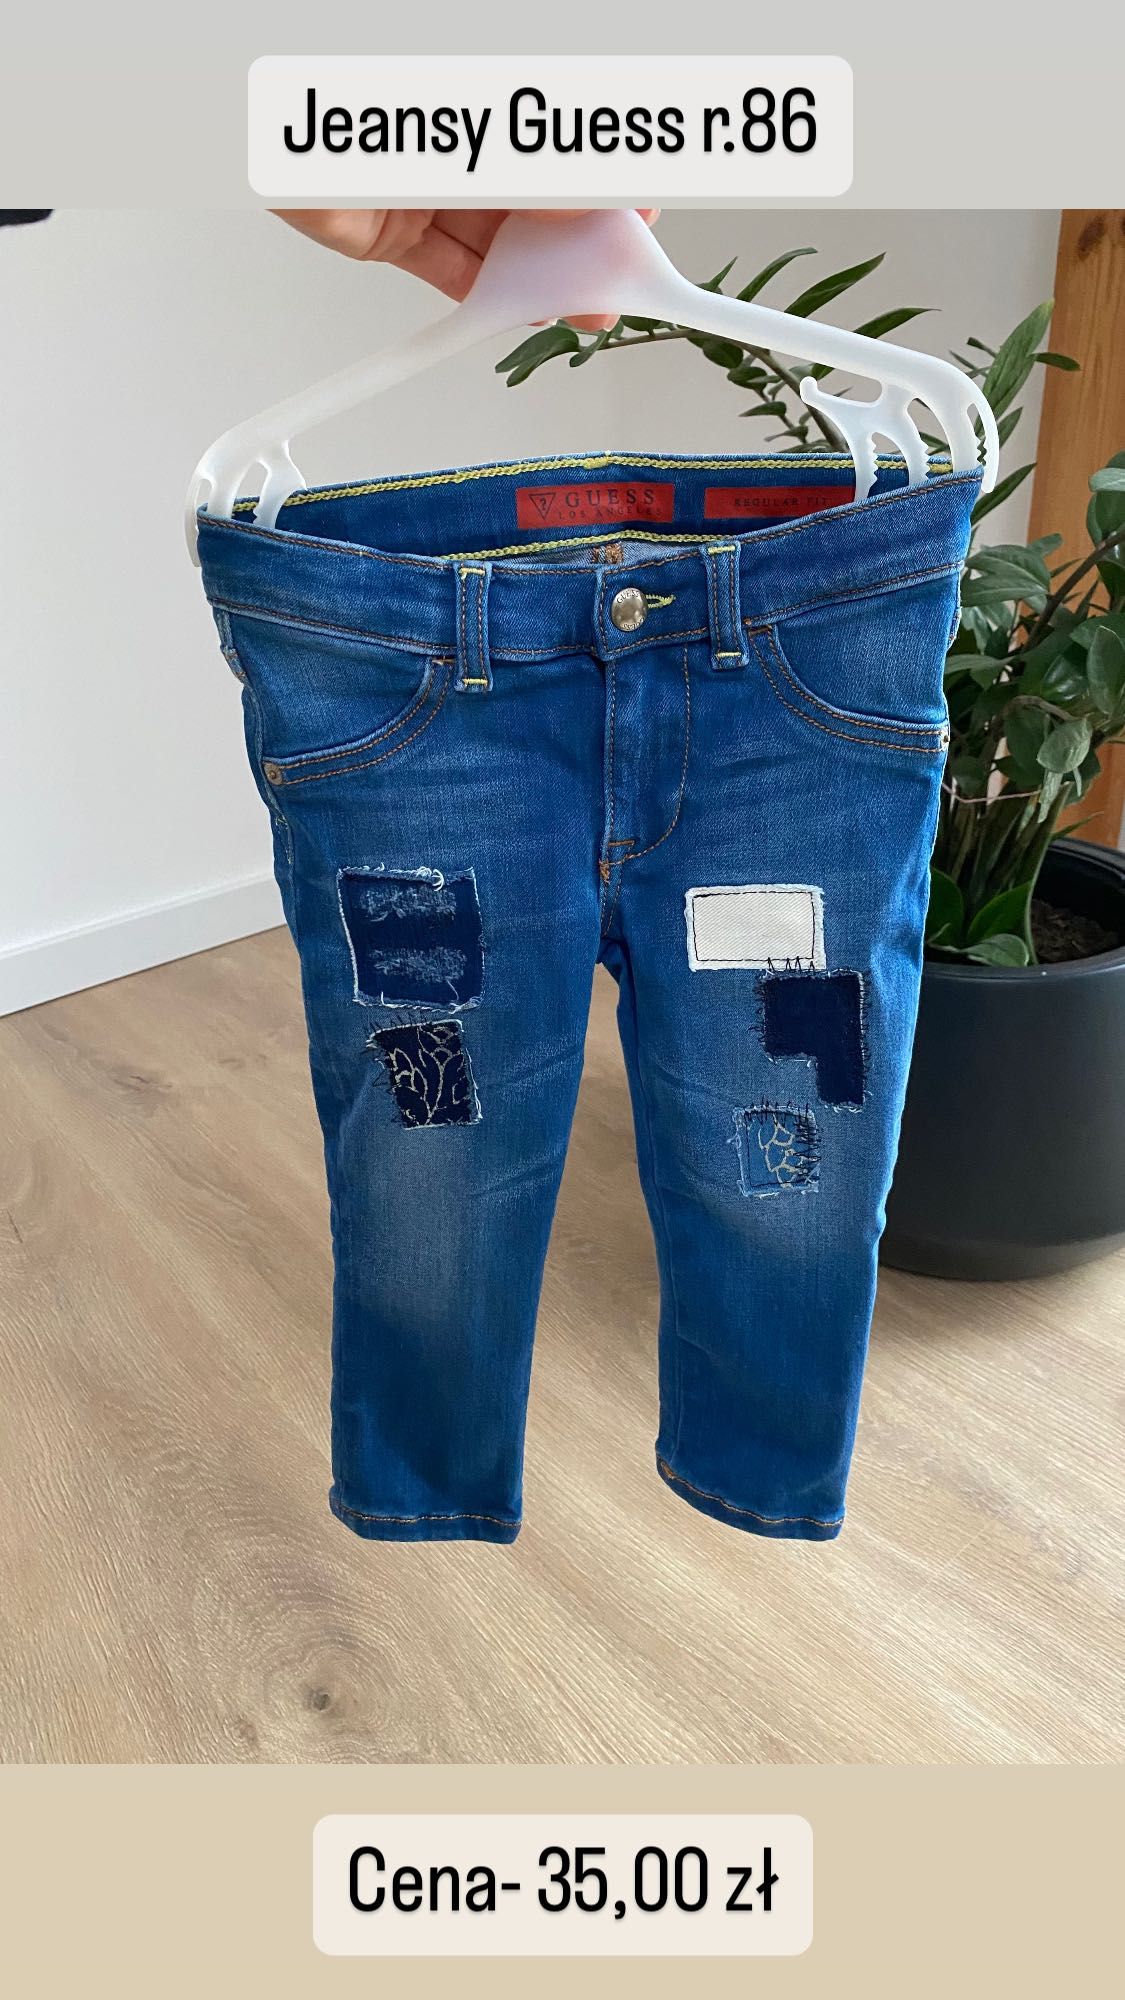 Spodnie jeansy Guess 86 gumki w pasie dla dziewczynki